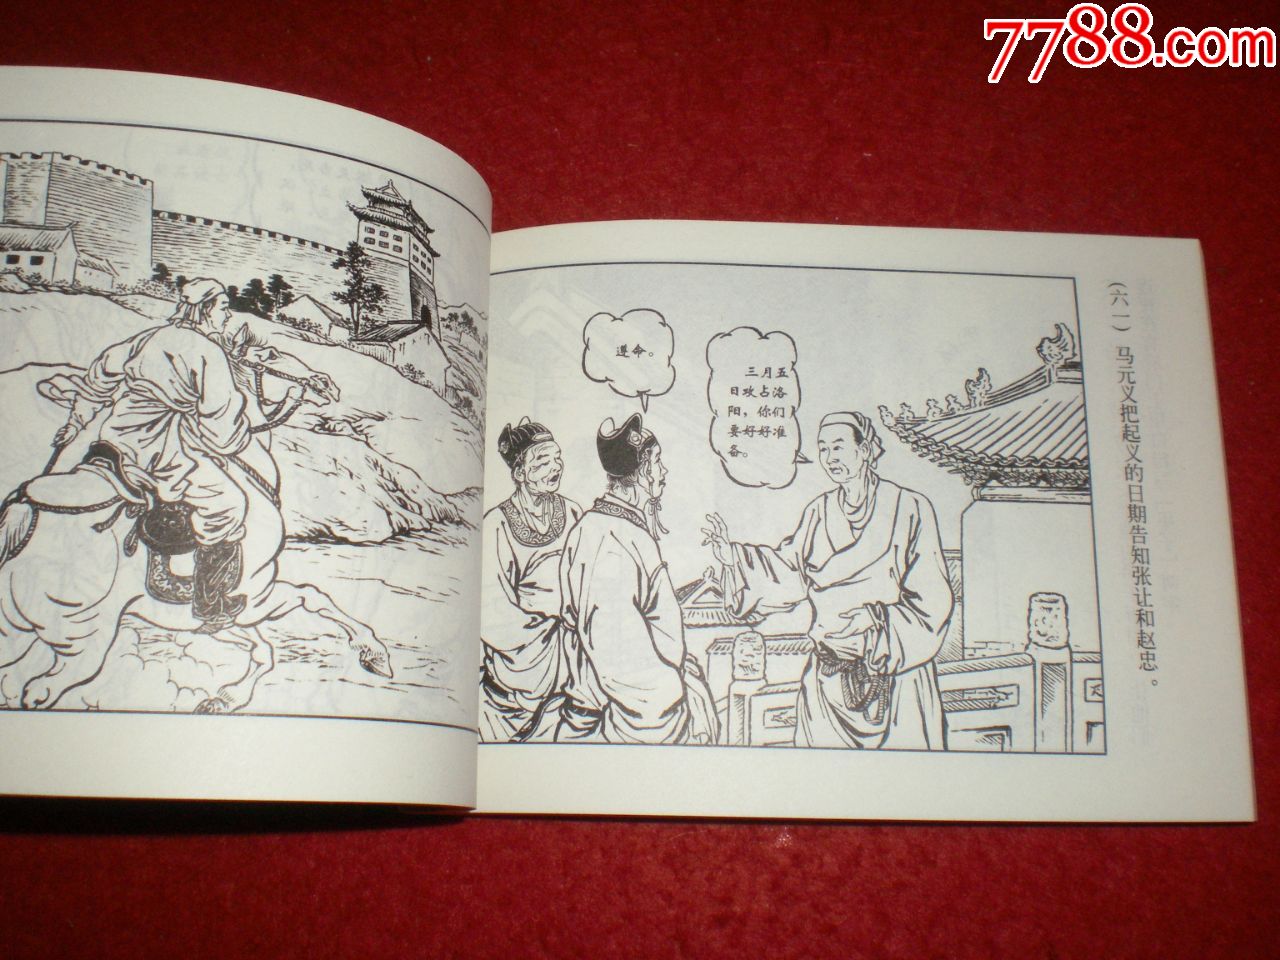 连环画《金田起义》程十发,董天野绘画,上海人民美术出版社